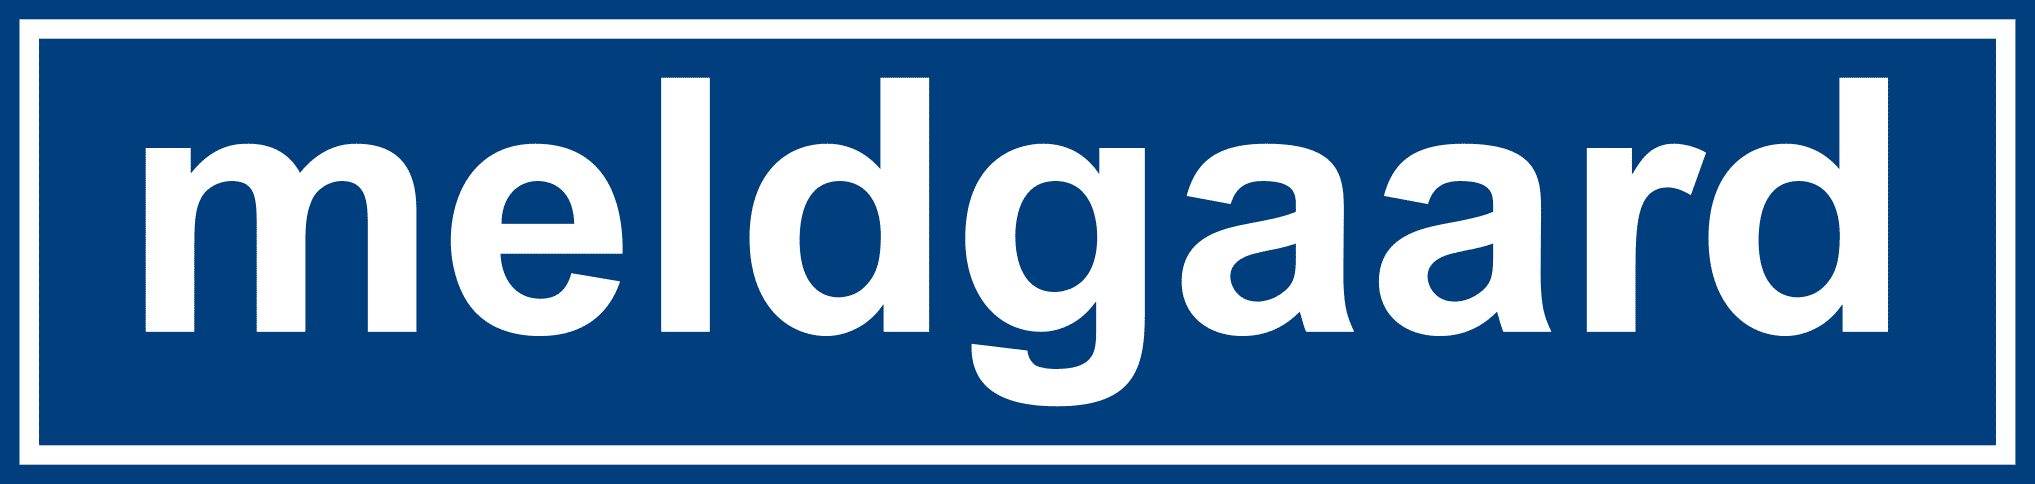 meldgaard_logo